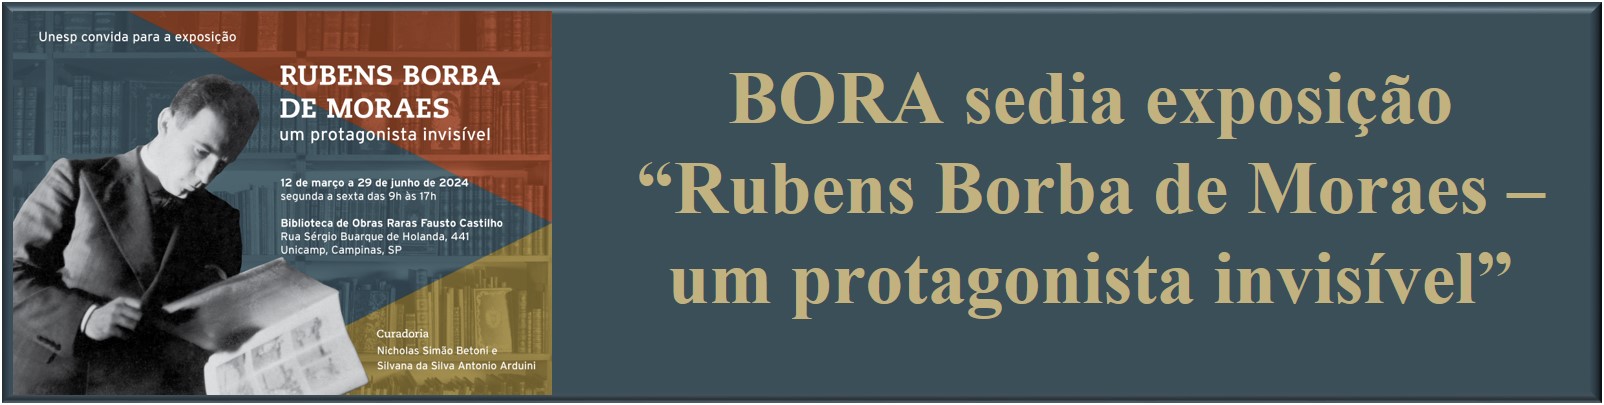 Exposicao-Rubens-Borba-de-Moraes